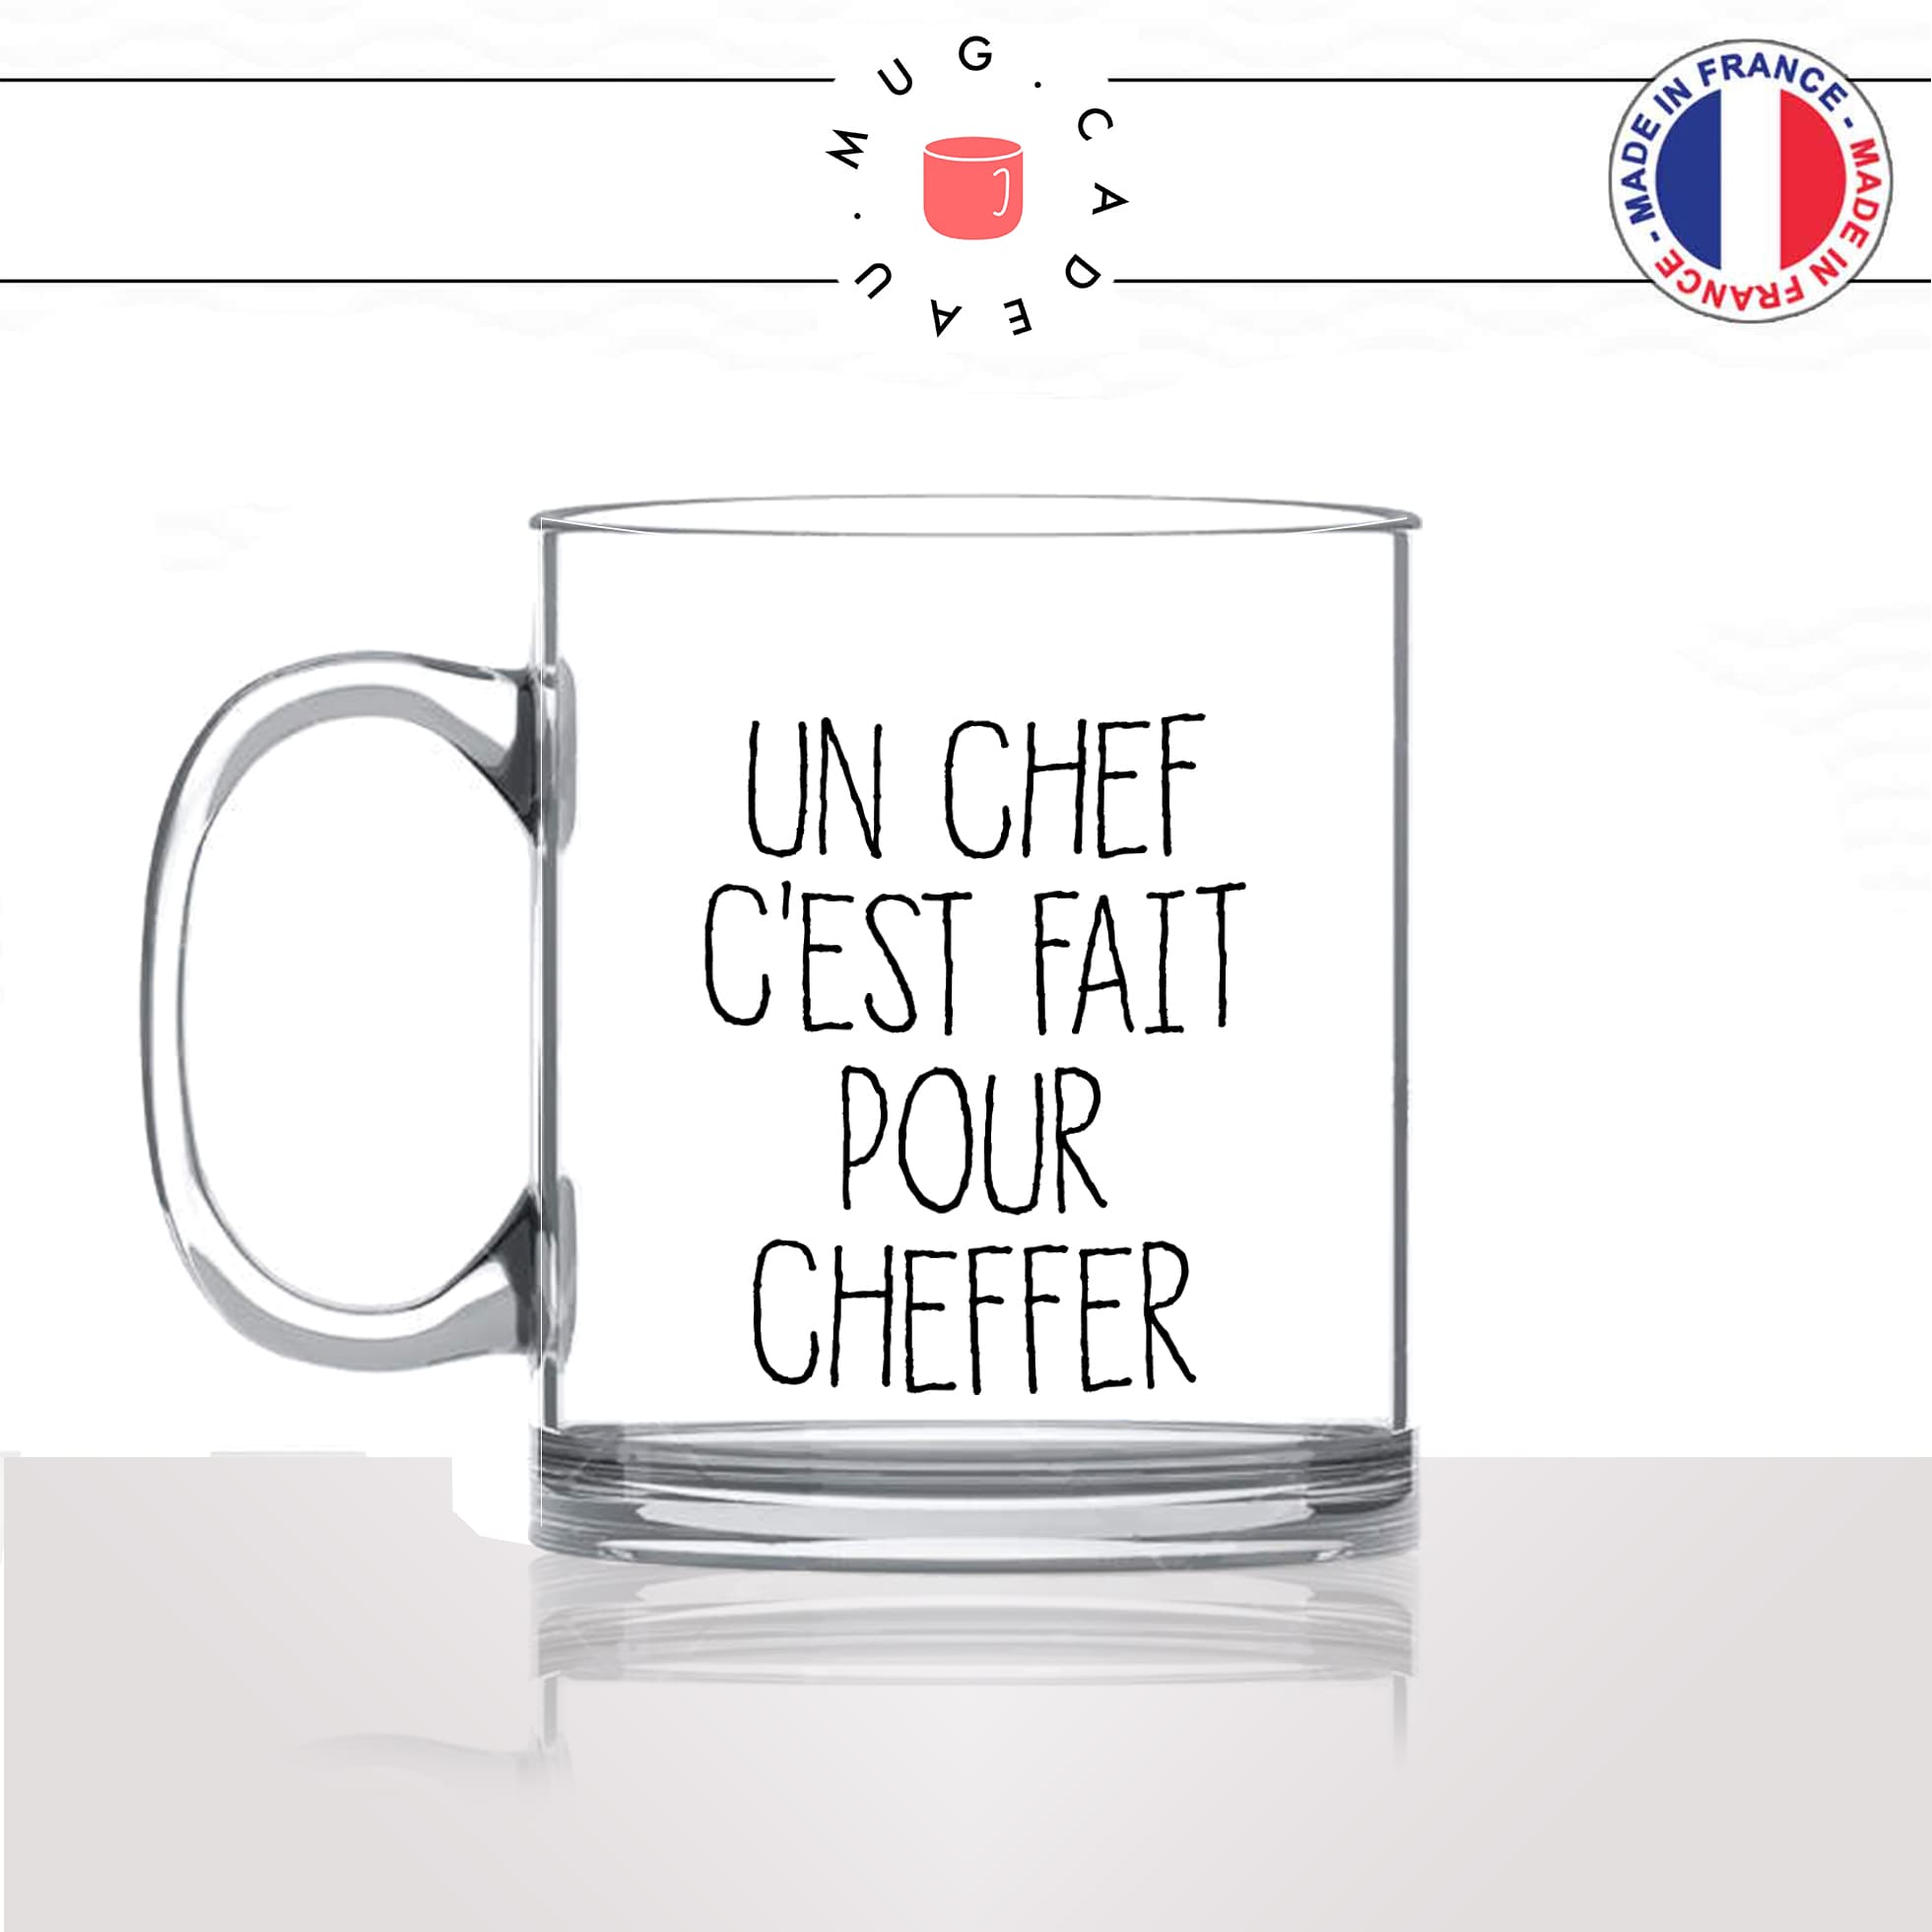 mug-tasse-en-verre-transparent-glass-un-chef-cest-fait-pour-cheffer-jacques-chirac-citation-président-homme-idée-cadeau-fun-cool-café-thé-original